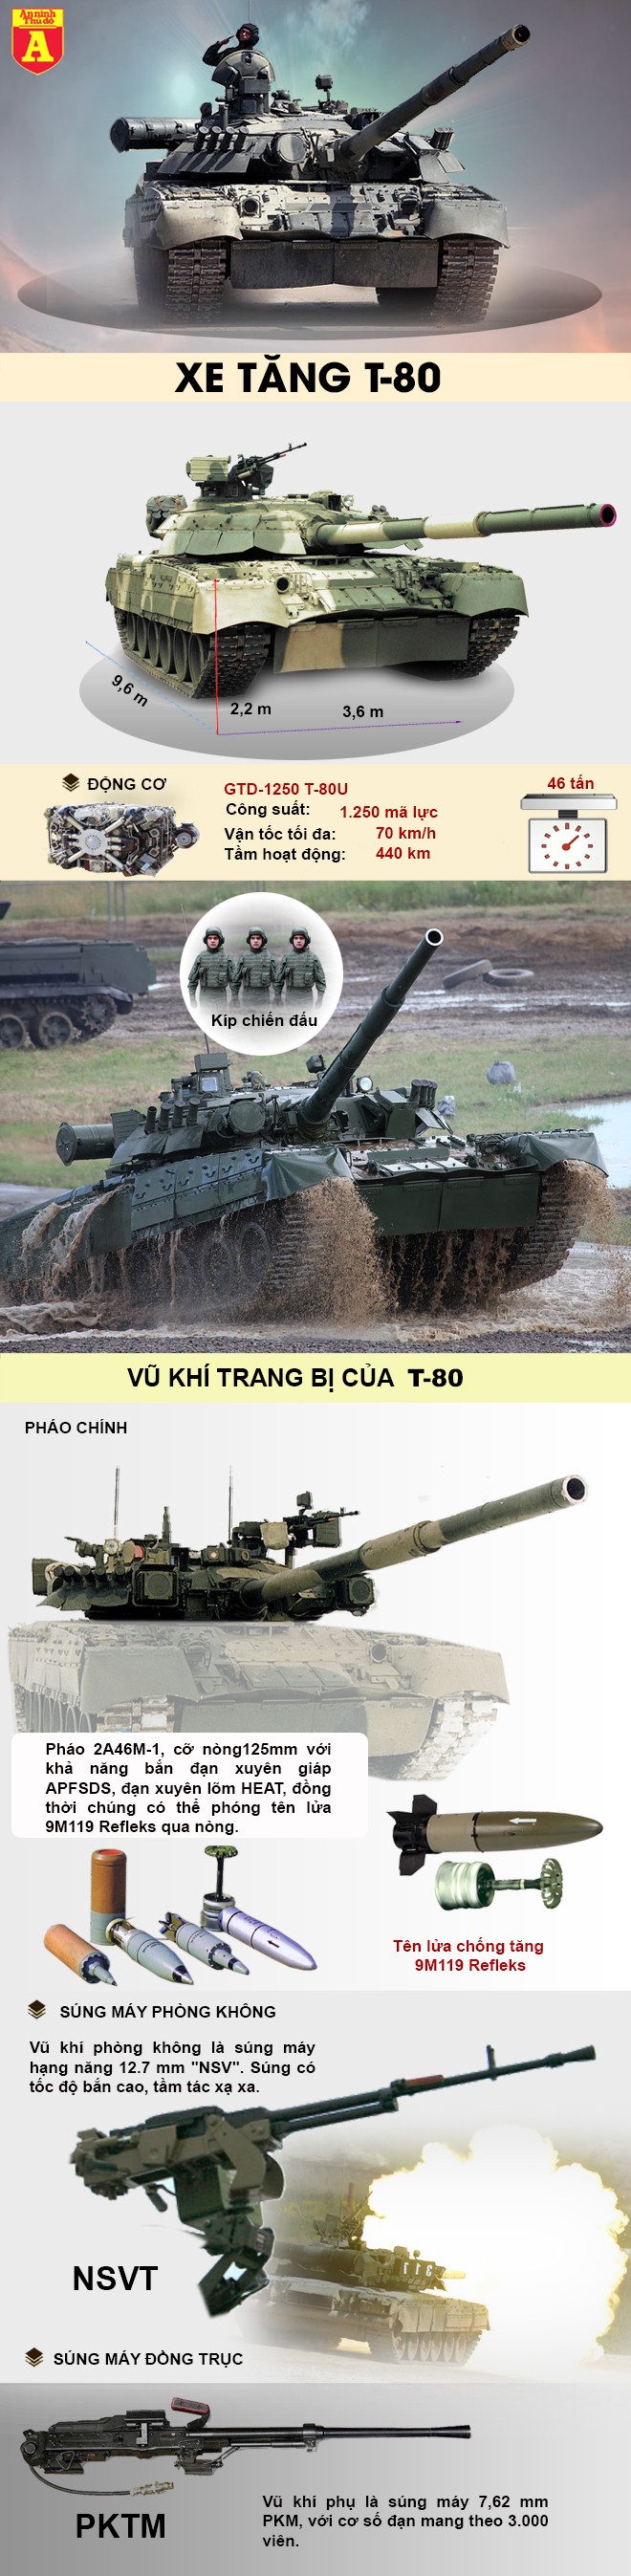 [Infographic] "Xe tăng bay" T-80 tái xuất sẽ giúp SAA đè bẹp phiến quân tại chiến trường Syria? ảnh 3